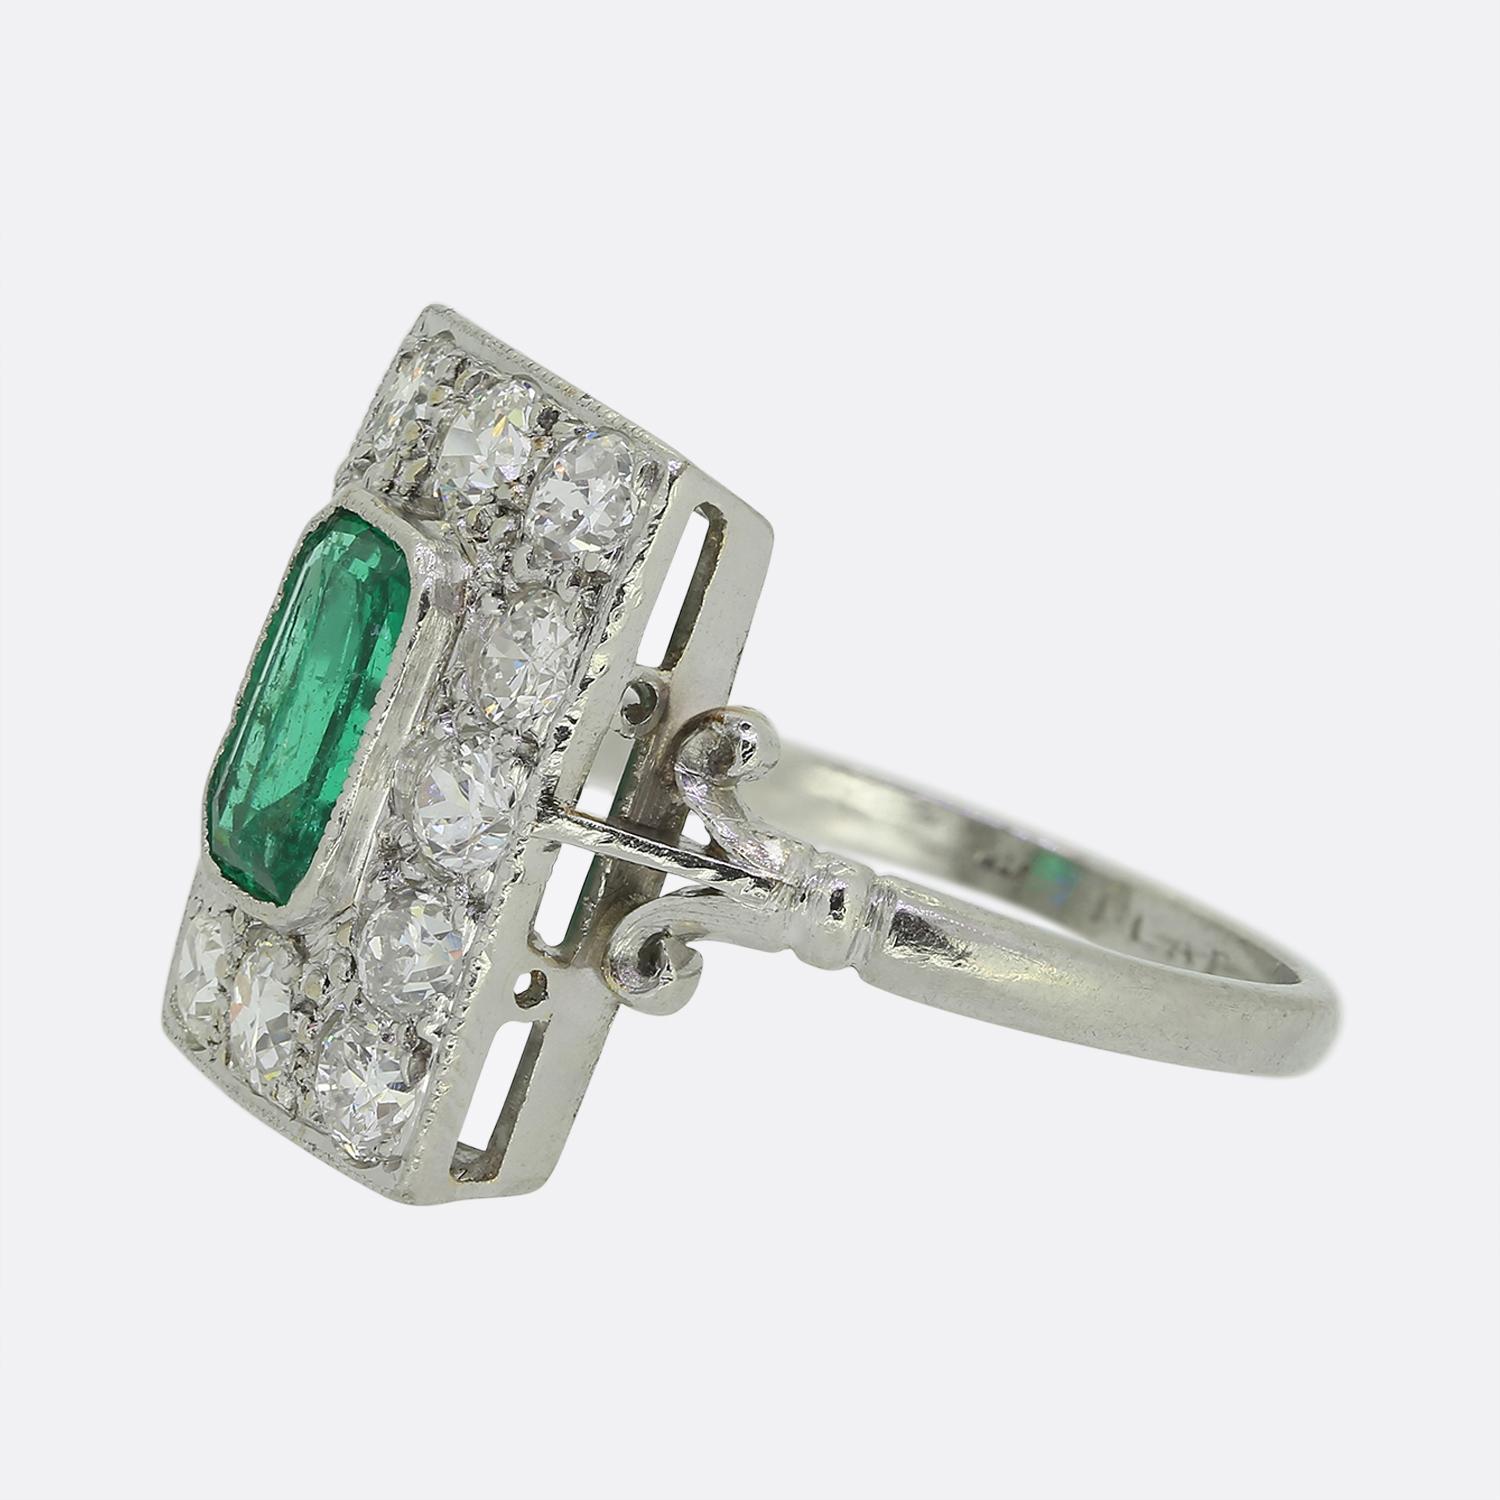 Hier haben wir einen reizvollen Ring mit Smaragd und Diamanten, der während des Höhepunkts der Art-déco-Bewegung gefertigt wurde. Dieses Stück aus Platin zeigt einen einzelnen natürlichen Smaragd im Smaragdschliff in der Mitte der Vorderseite und